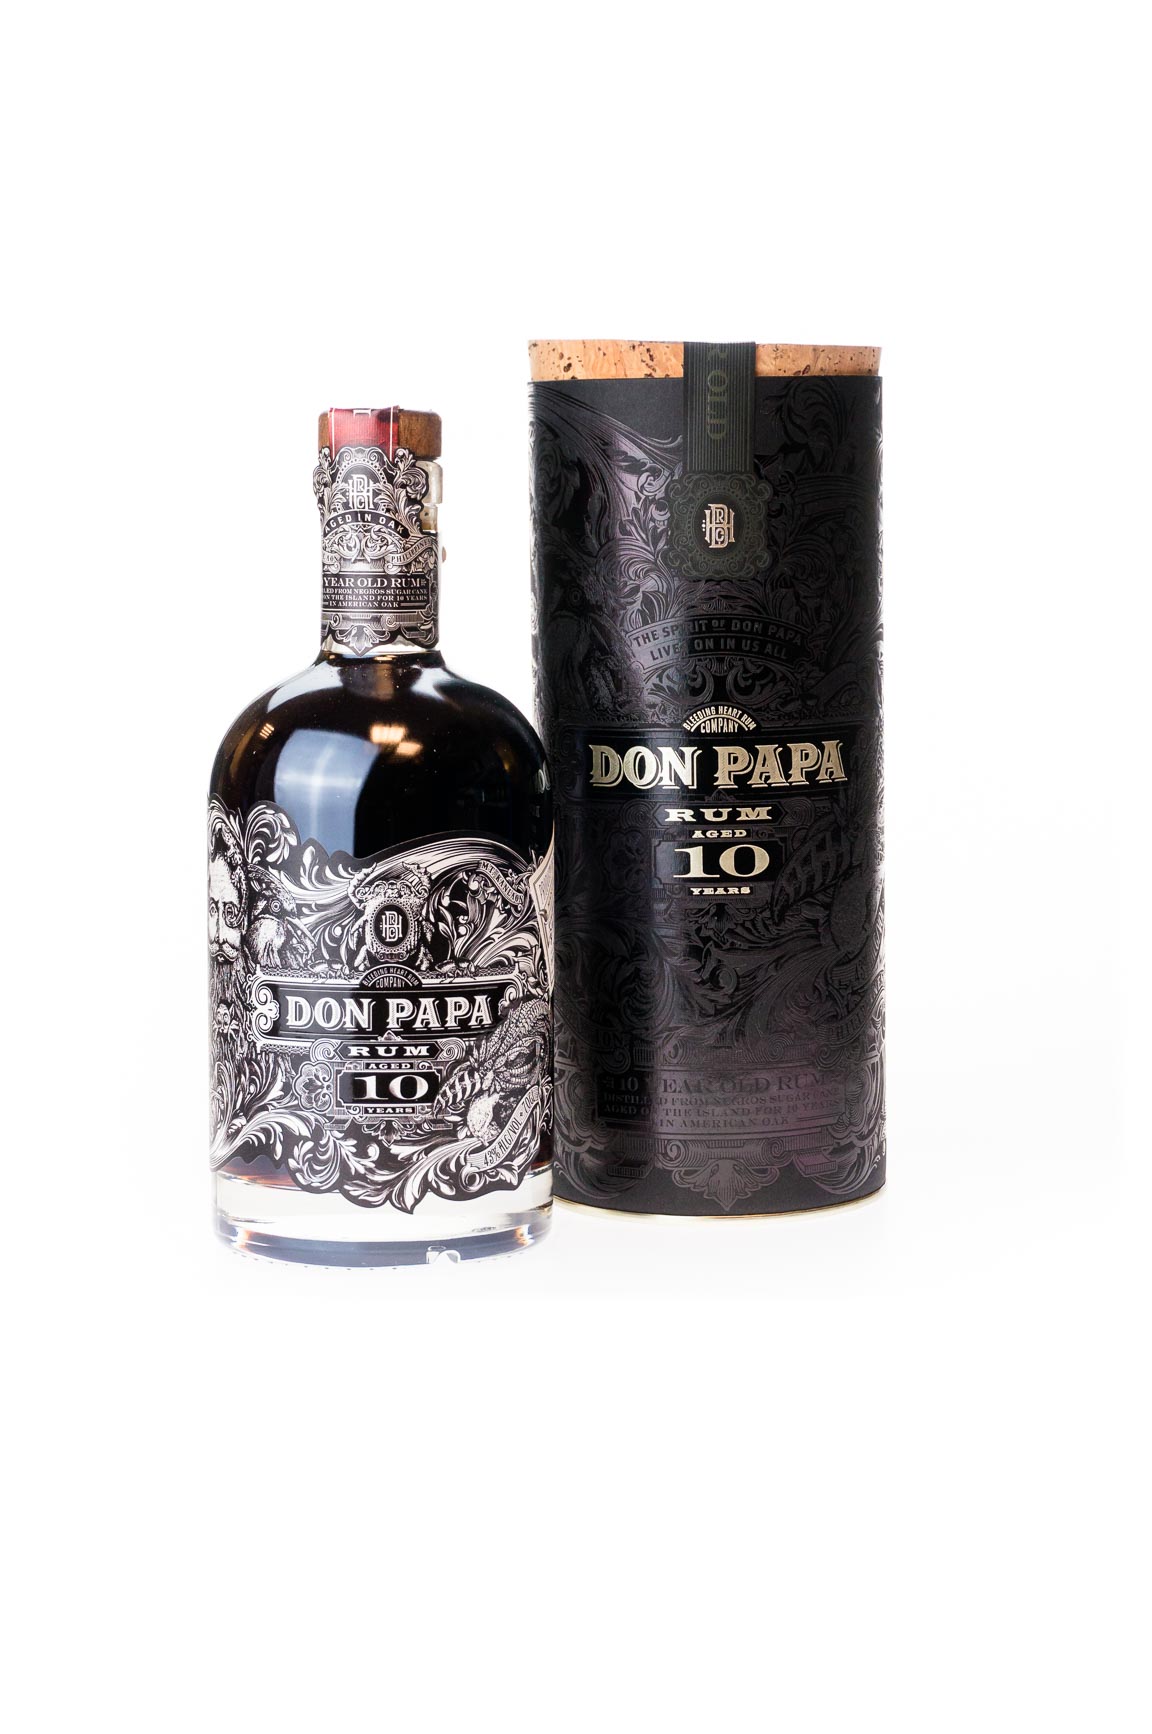 Don Papa günstig 10 Jahre Rum kaufen